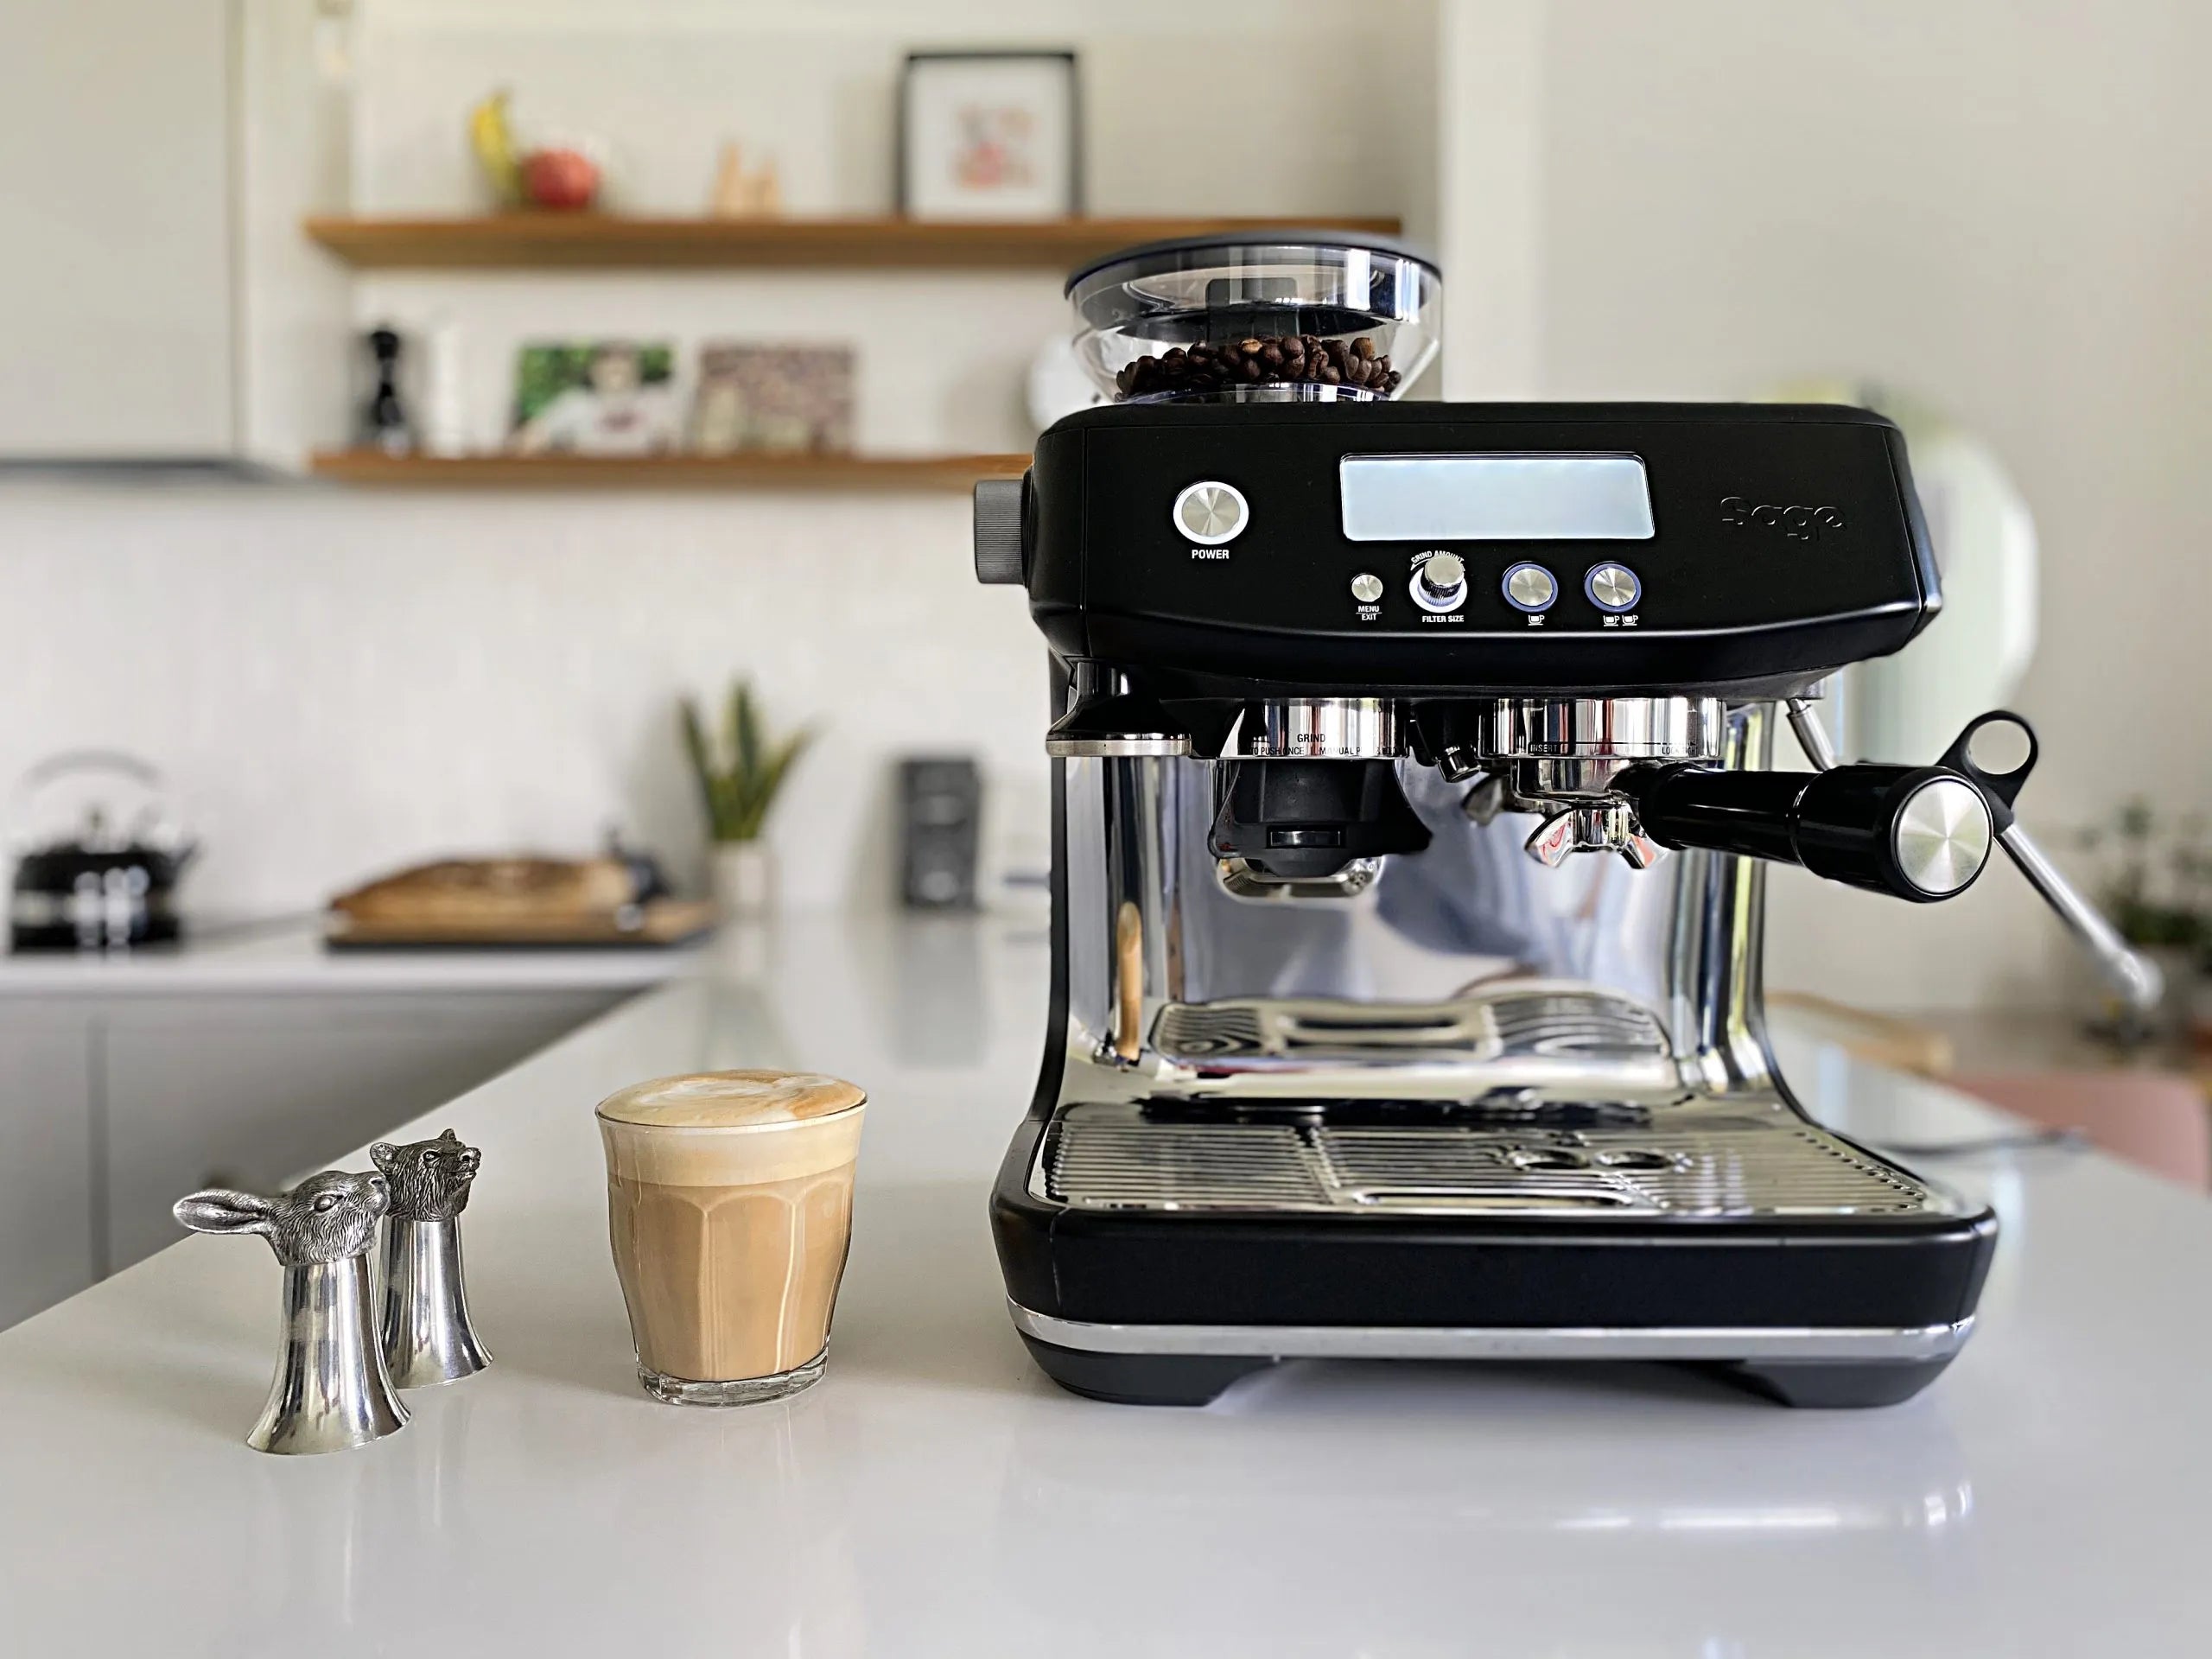 Decalcificazione , come pulire la macchina del caffè dal calcare?